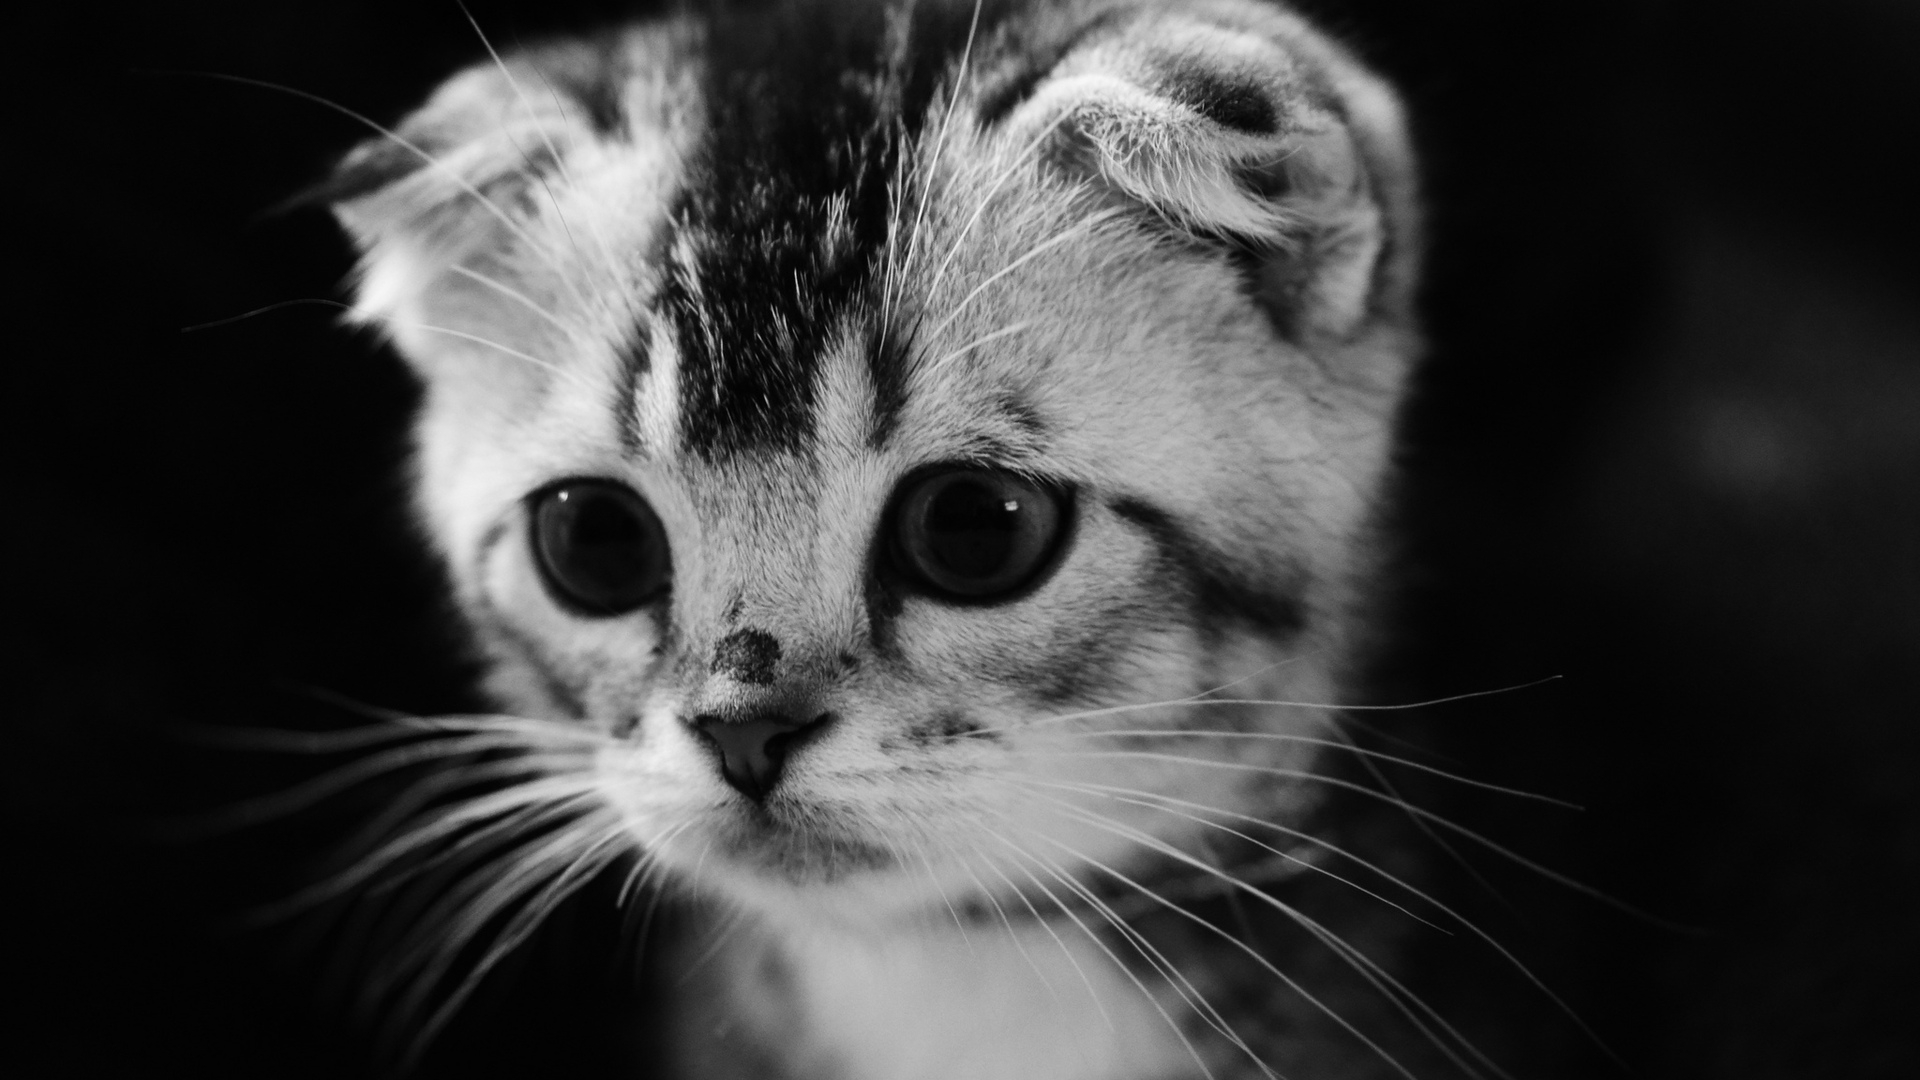 Cute Gray Kitten for 1920 x 1080 HDTV 1080p resolution